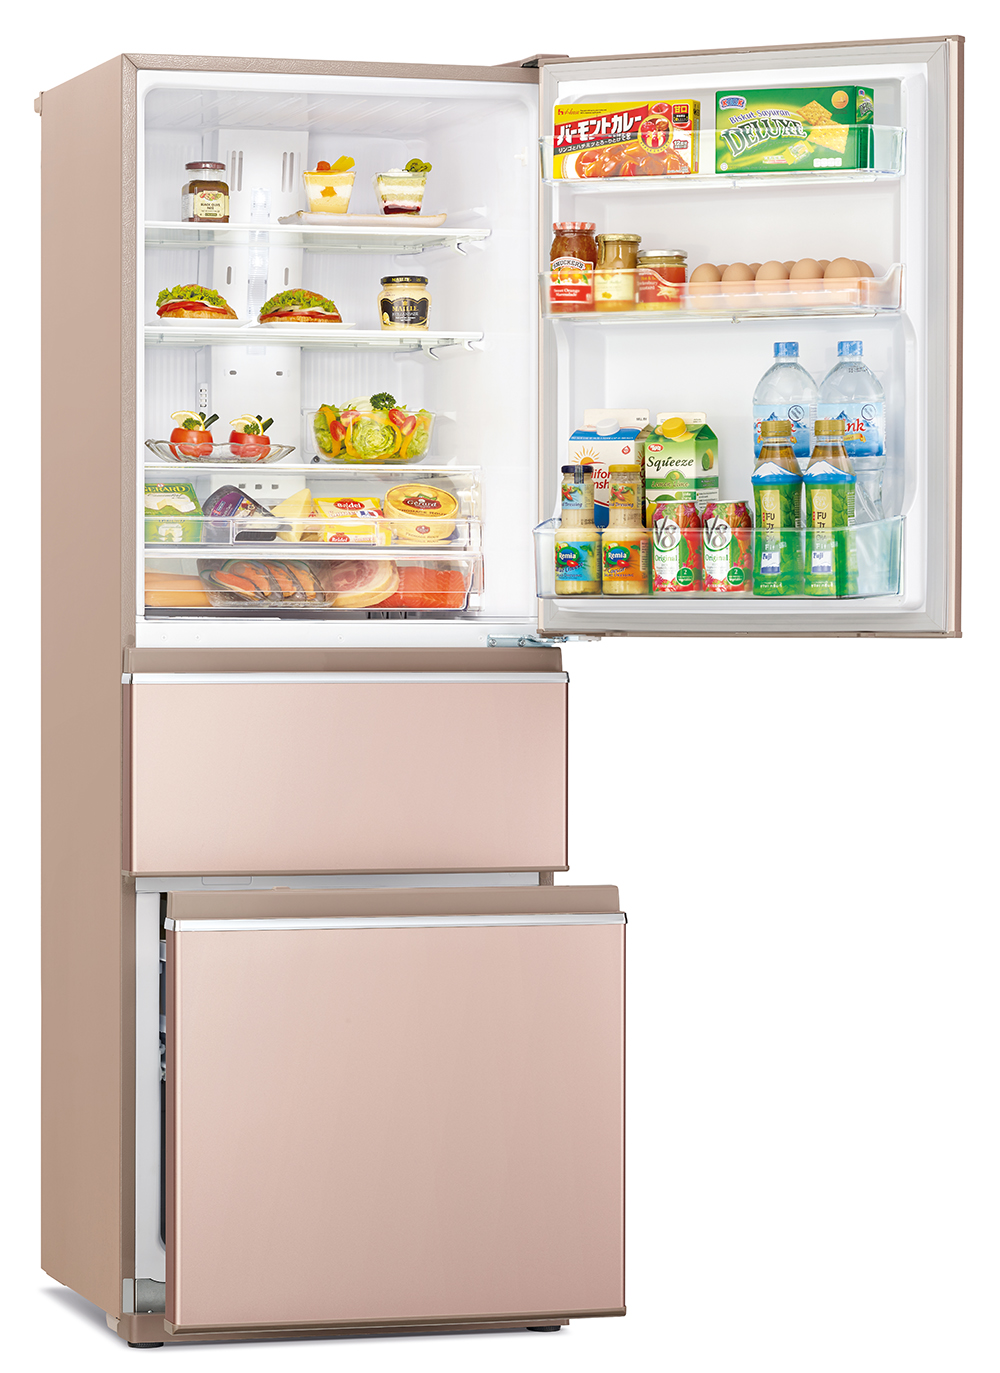 Tủ lạnh với thiết kế mới lạ, độc đáo